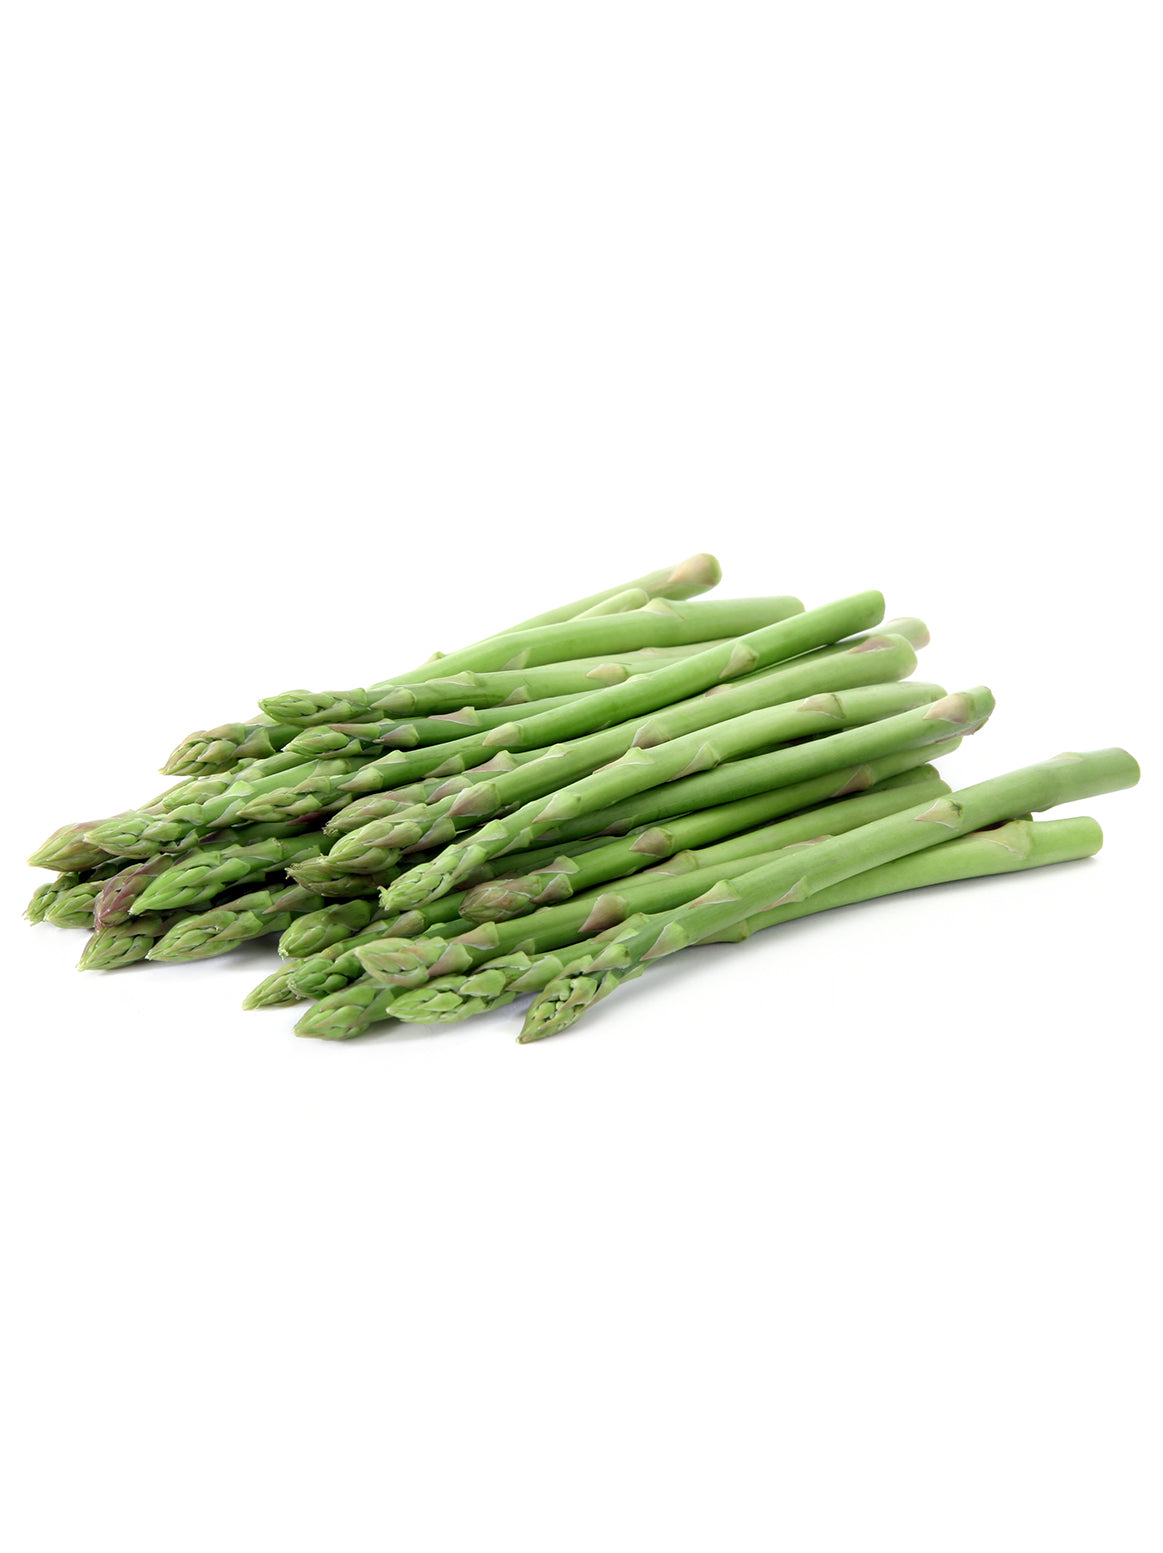 Organic Asparagus - each